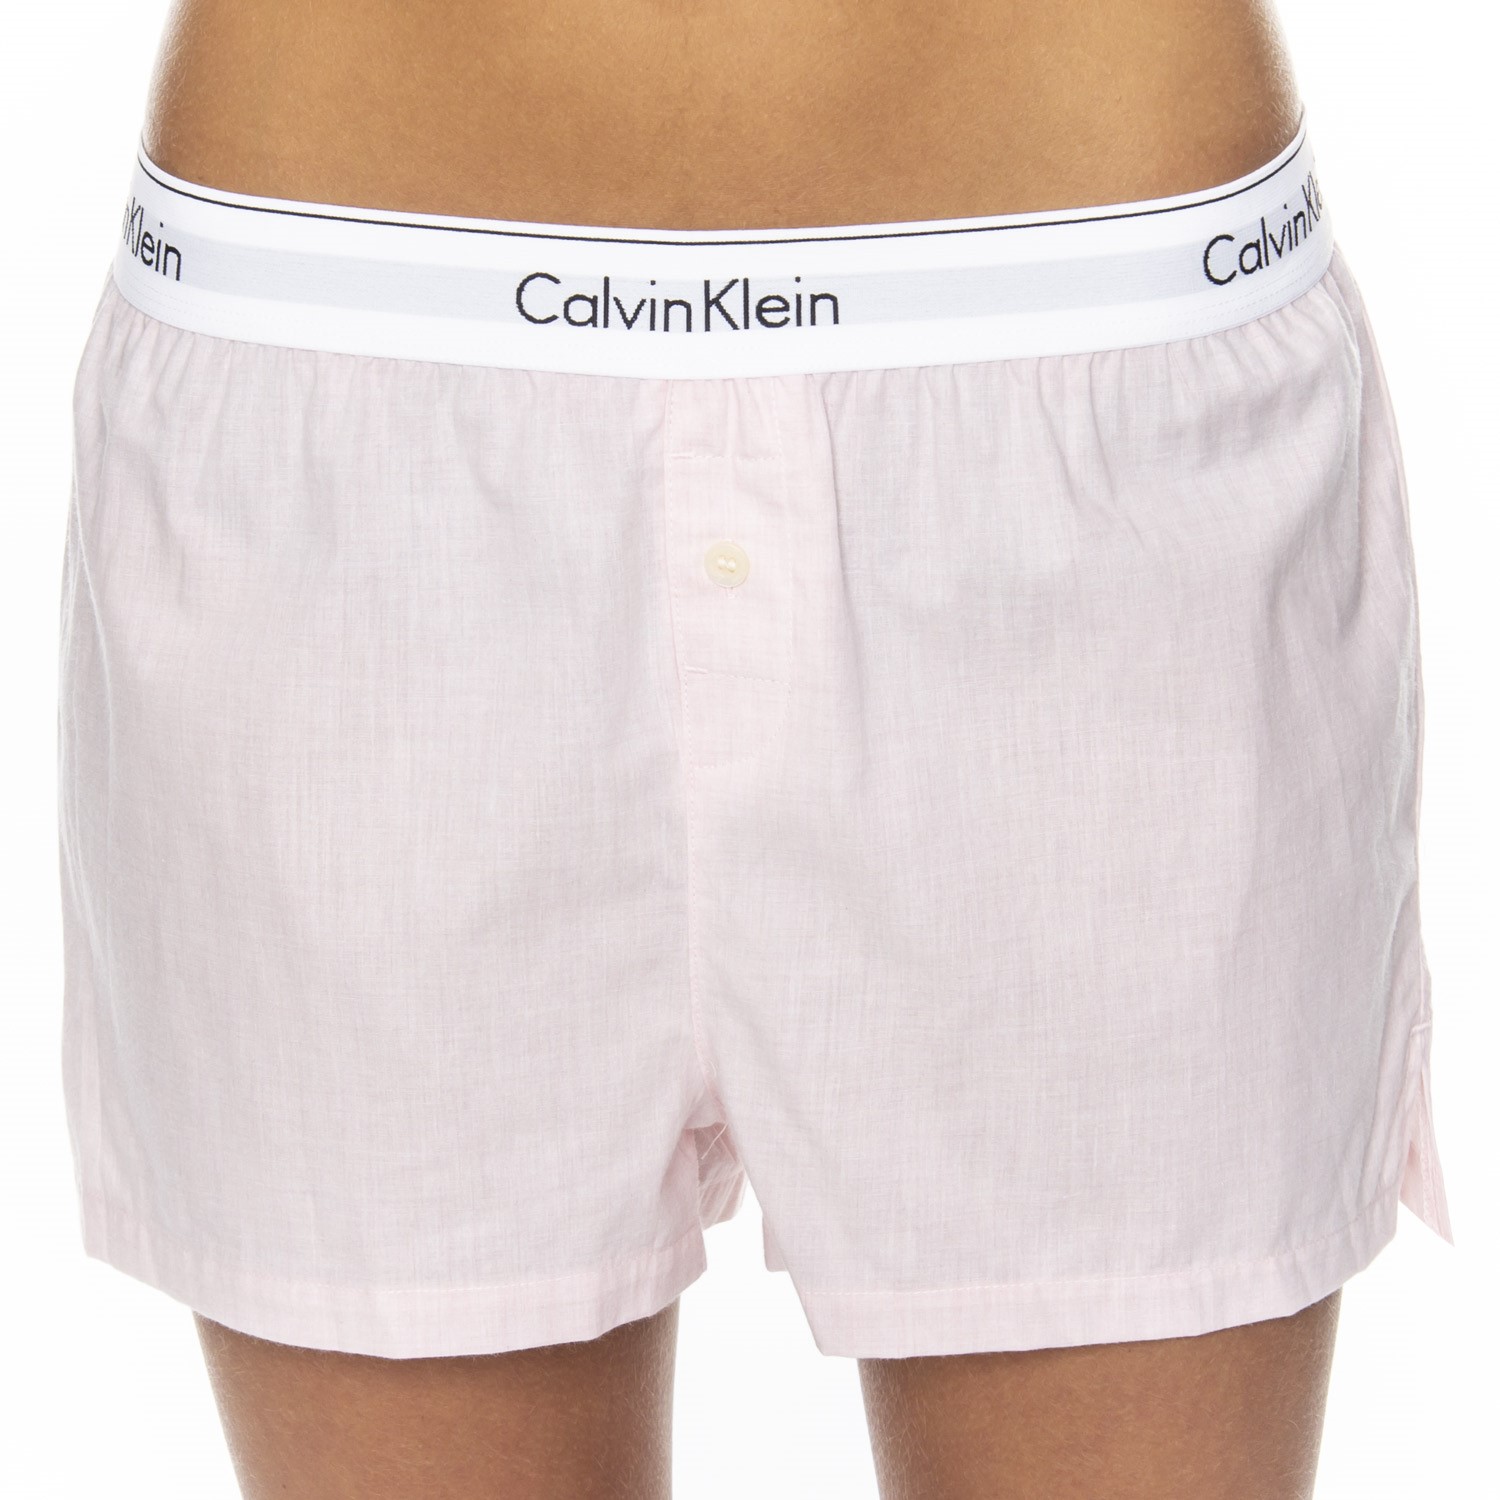 Calvin Klein Woven Cotton PJ Short